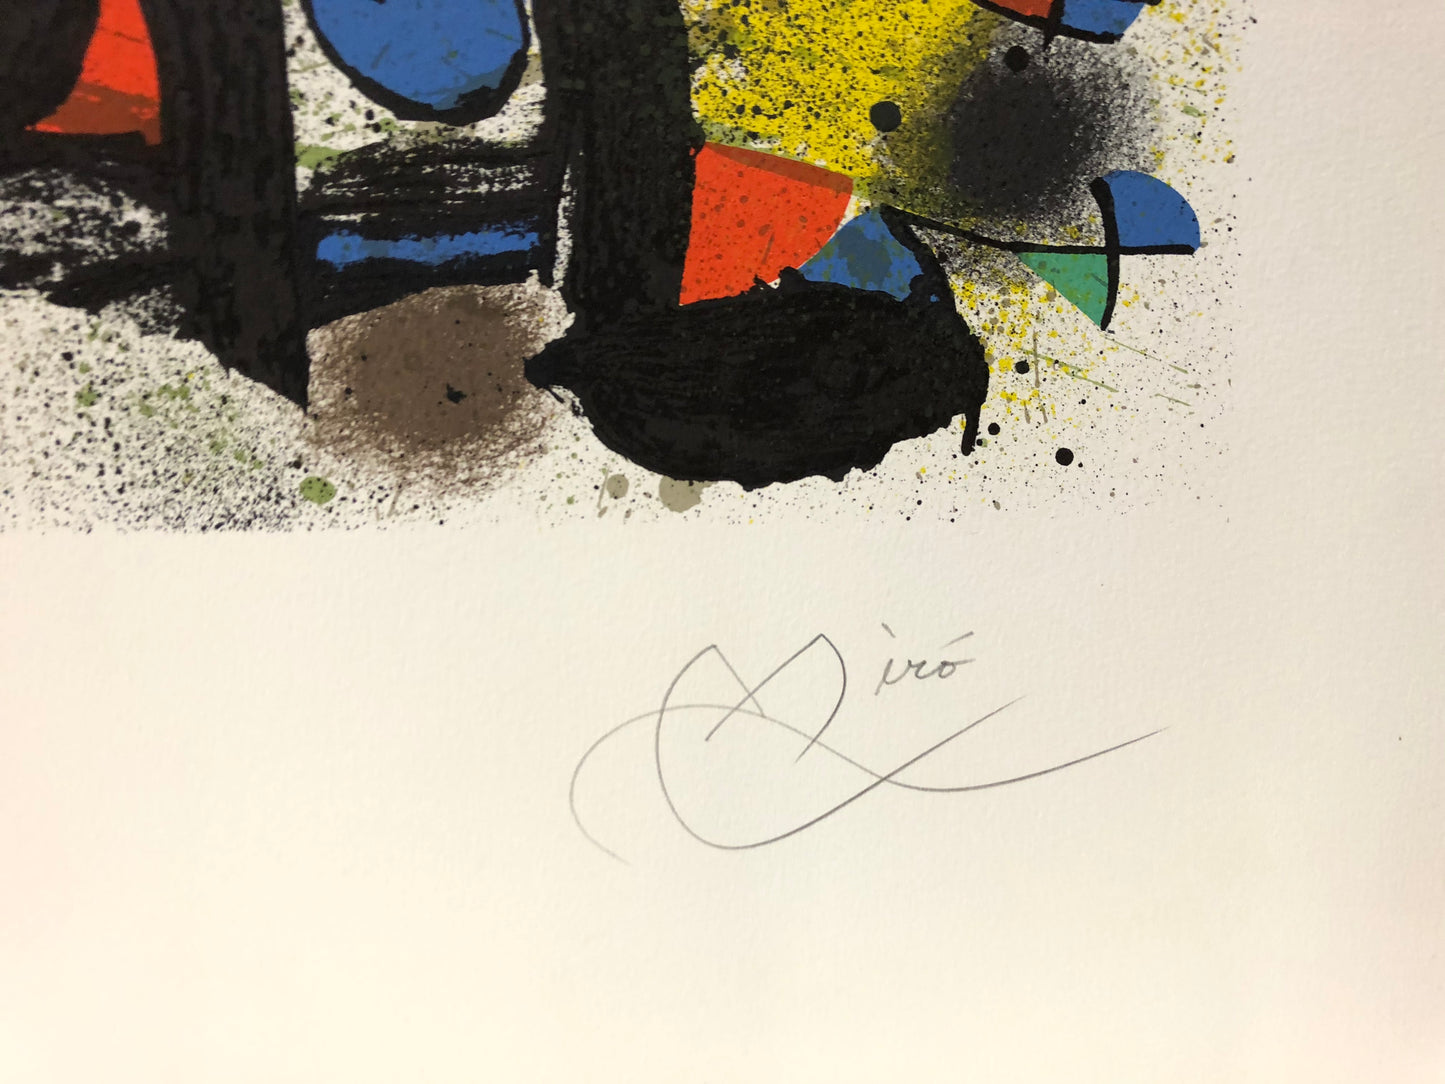 Joan Miro Signed Aquatint: "Sculptures I", 1974